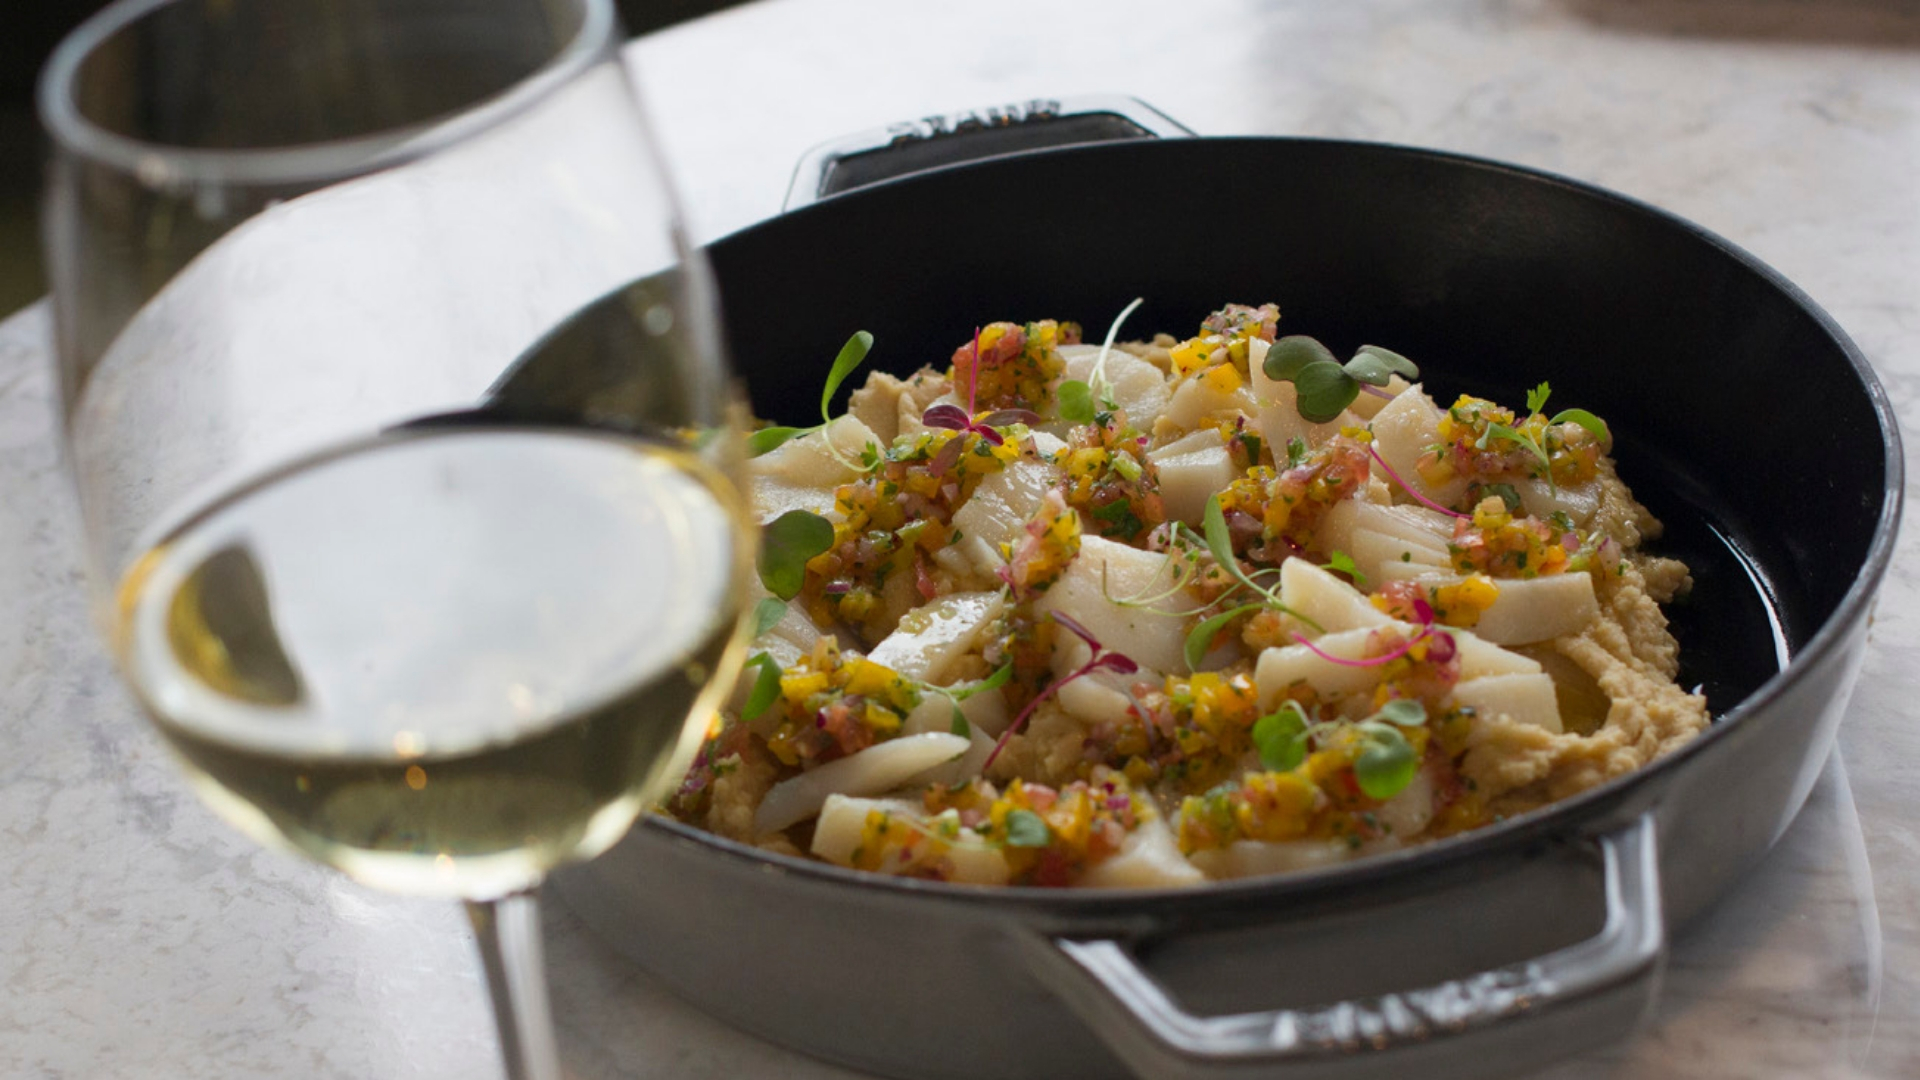 Salada de bacalhau vai muito bem com um vinho branco fresco